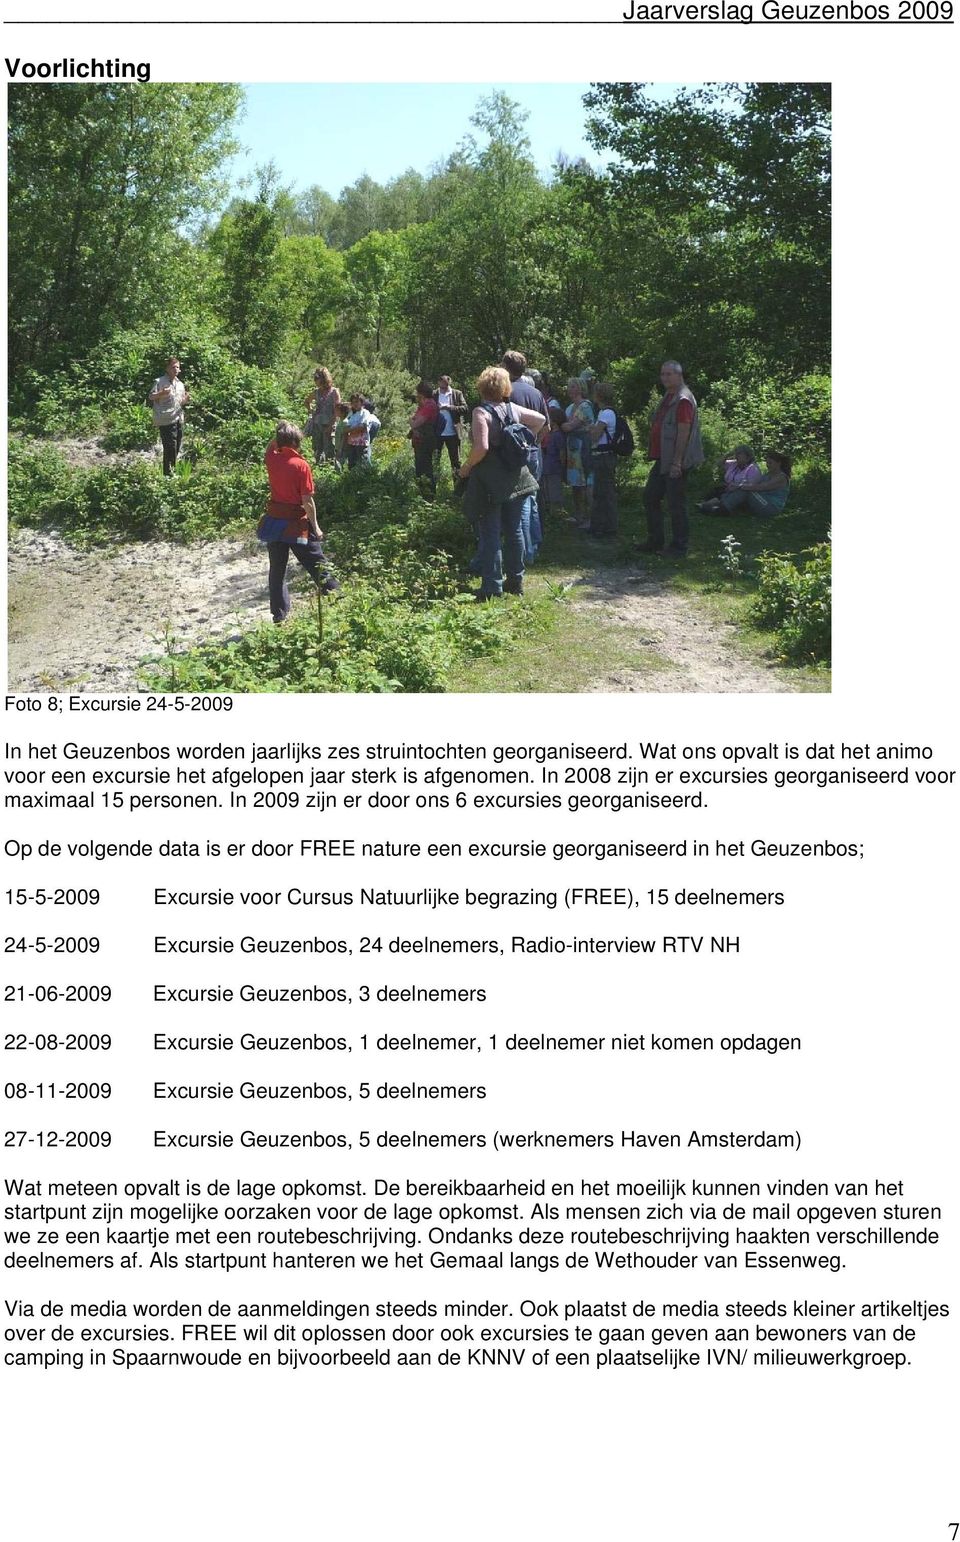 Op de volgende data is er door FREE nature een excursie georganiseerd in het Geuzenbos; 15-5-2009 Excursie voor Cursus Natuurlijke begrazing (FREE), 15 deelnemers 24-5-2009 Excursie Geuzenbos, 24